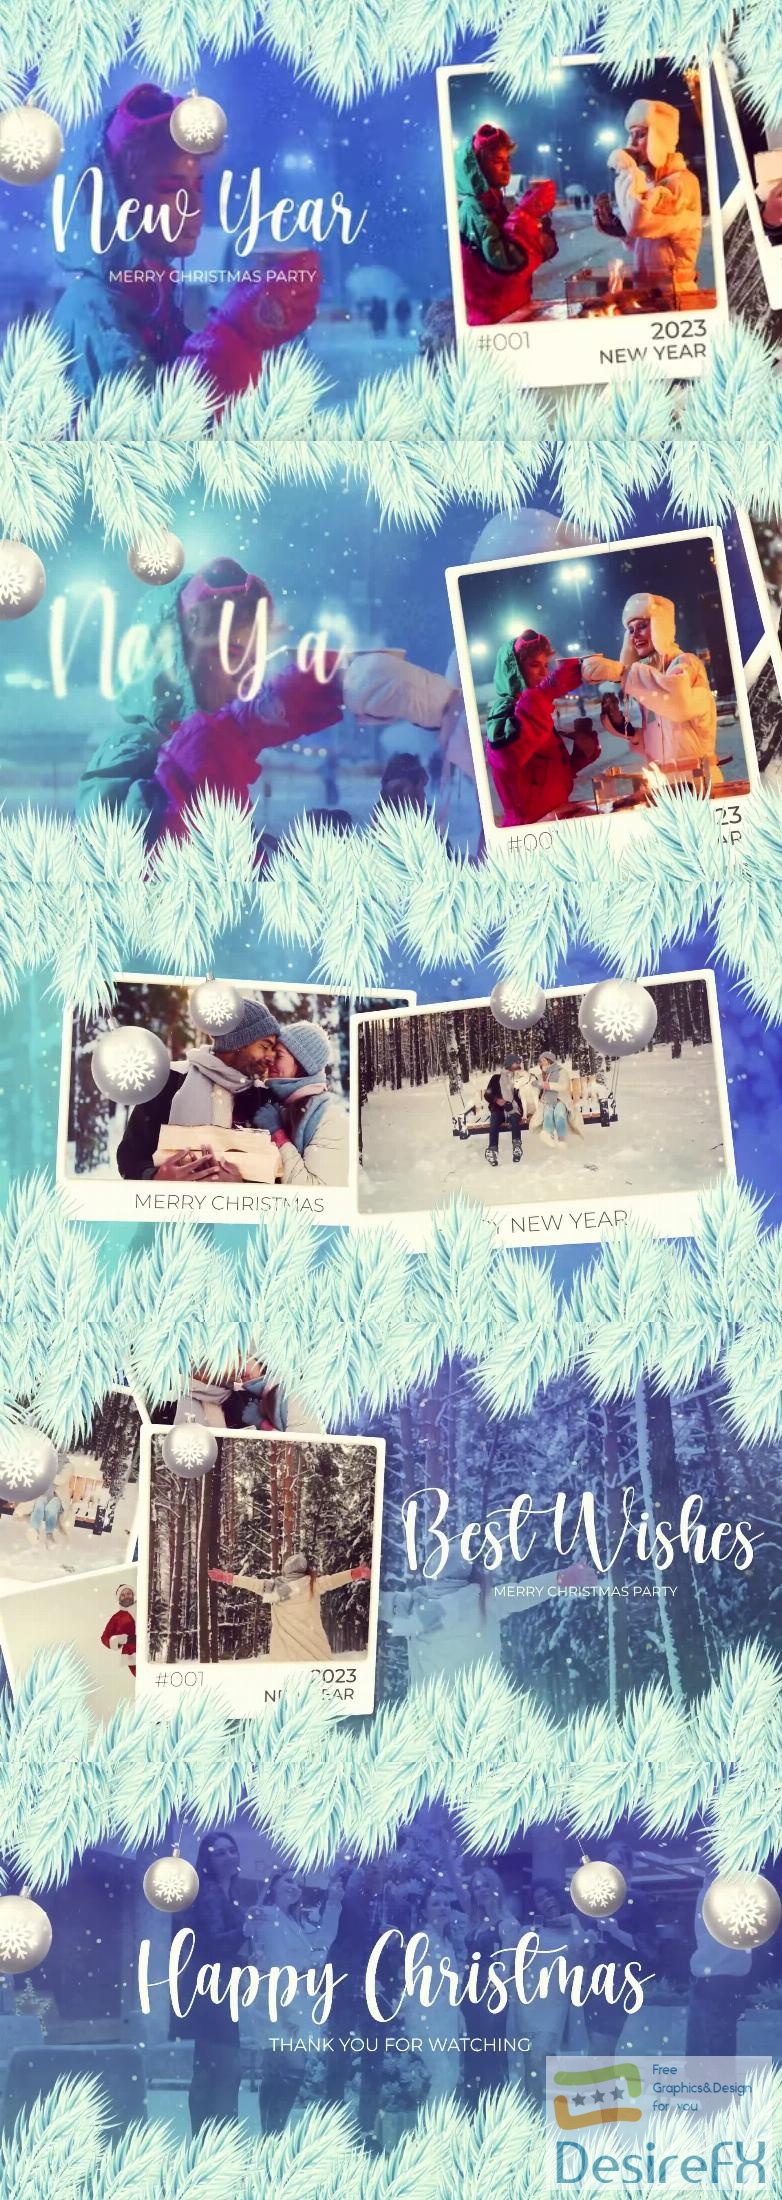 Videohive Christmas Photo Slideshow Happy New Year Opener 41899170